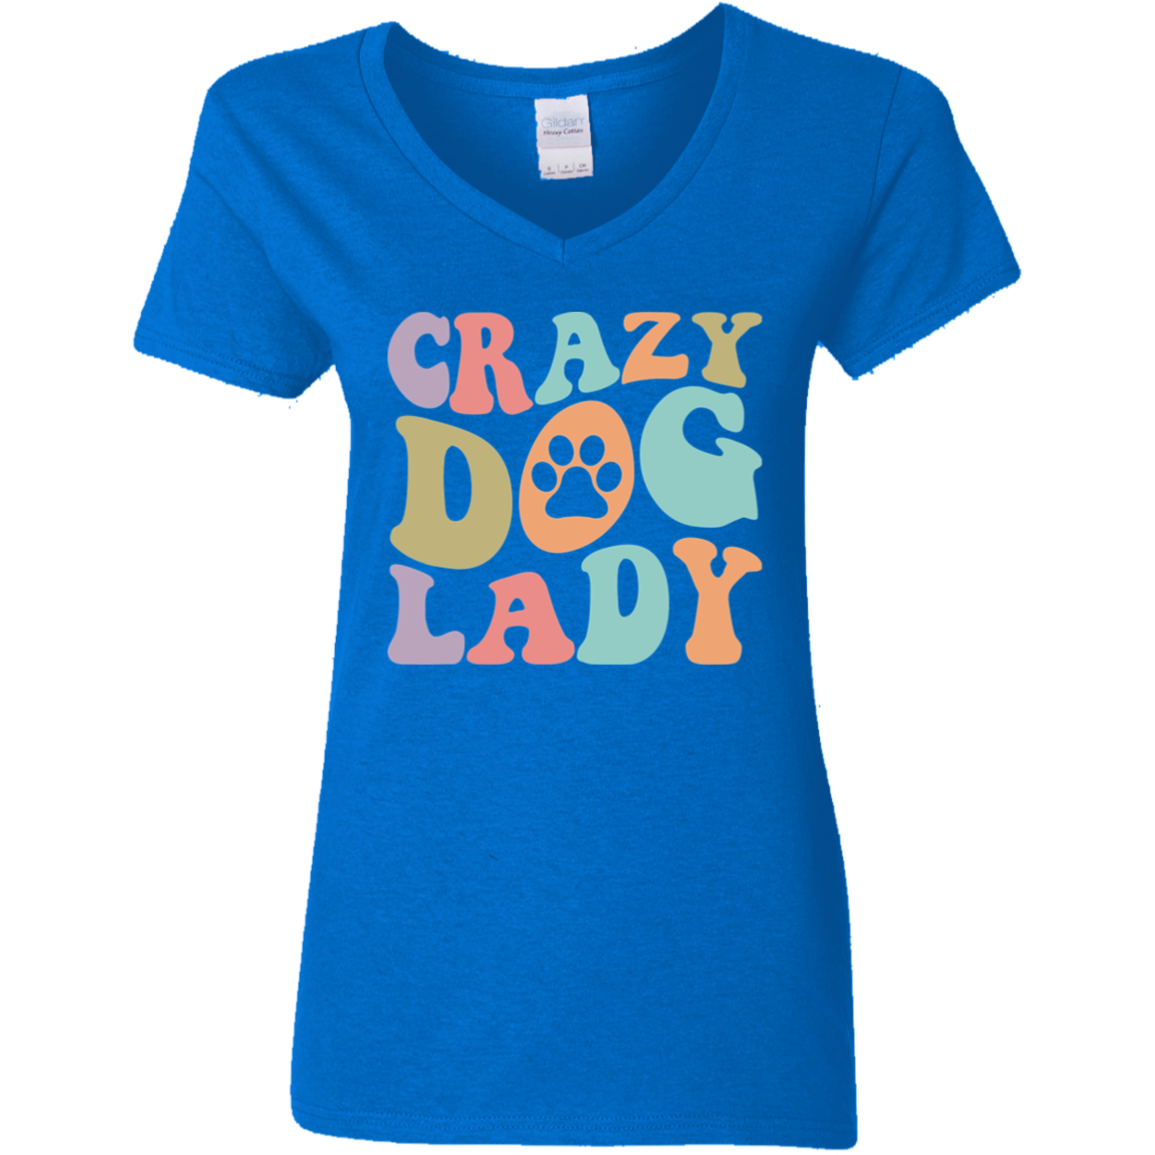 Crazy Dog Lady Paw Print Ladies' V-Neck T-Shirt